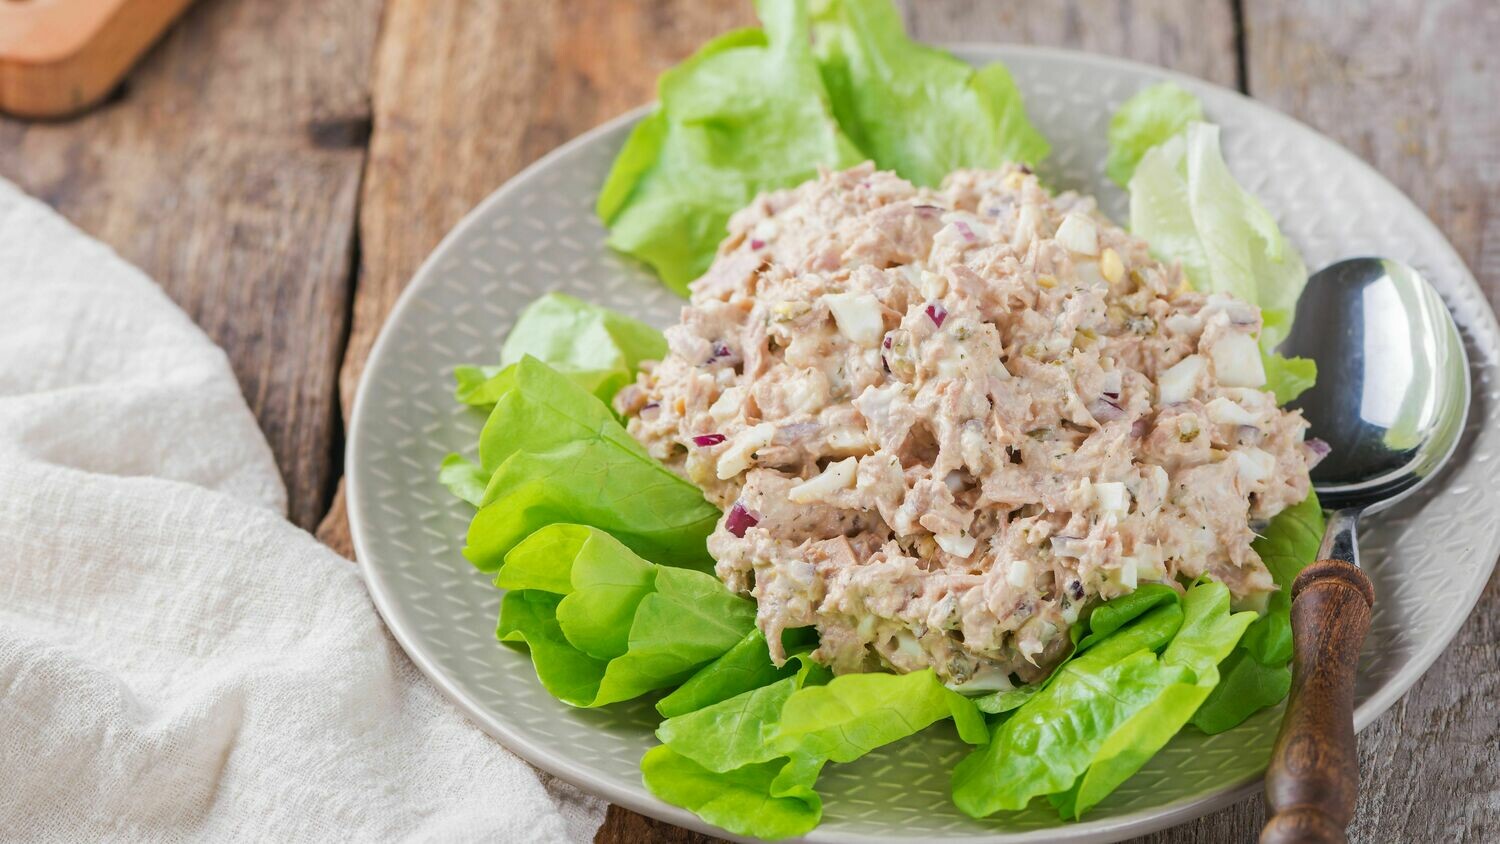 Gourmet Albacore Tuna Salad (1 lb)